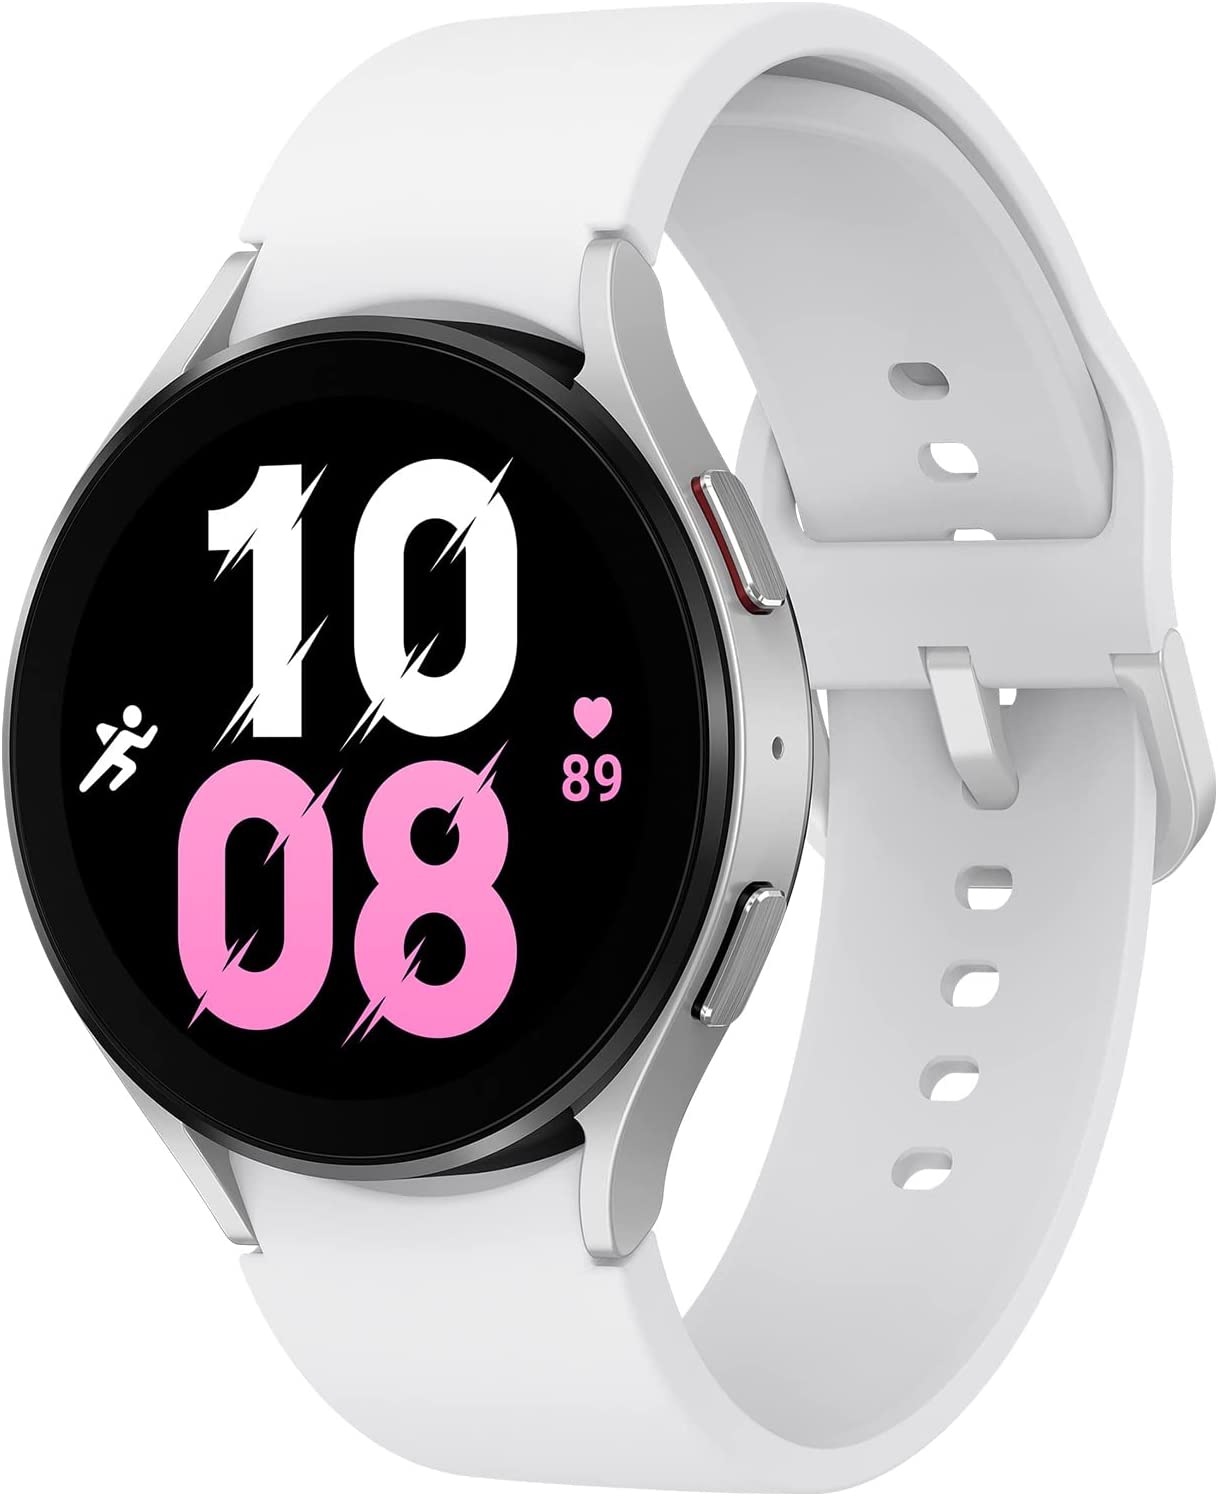 Samsung SMR910NZSAITV Smart Watch 1.4